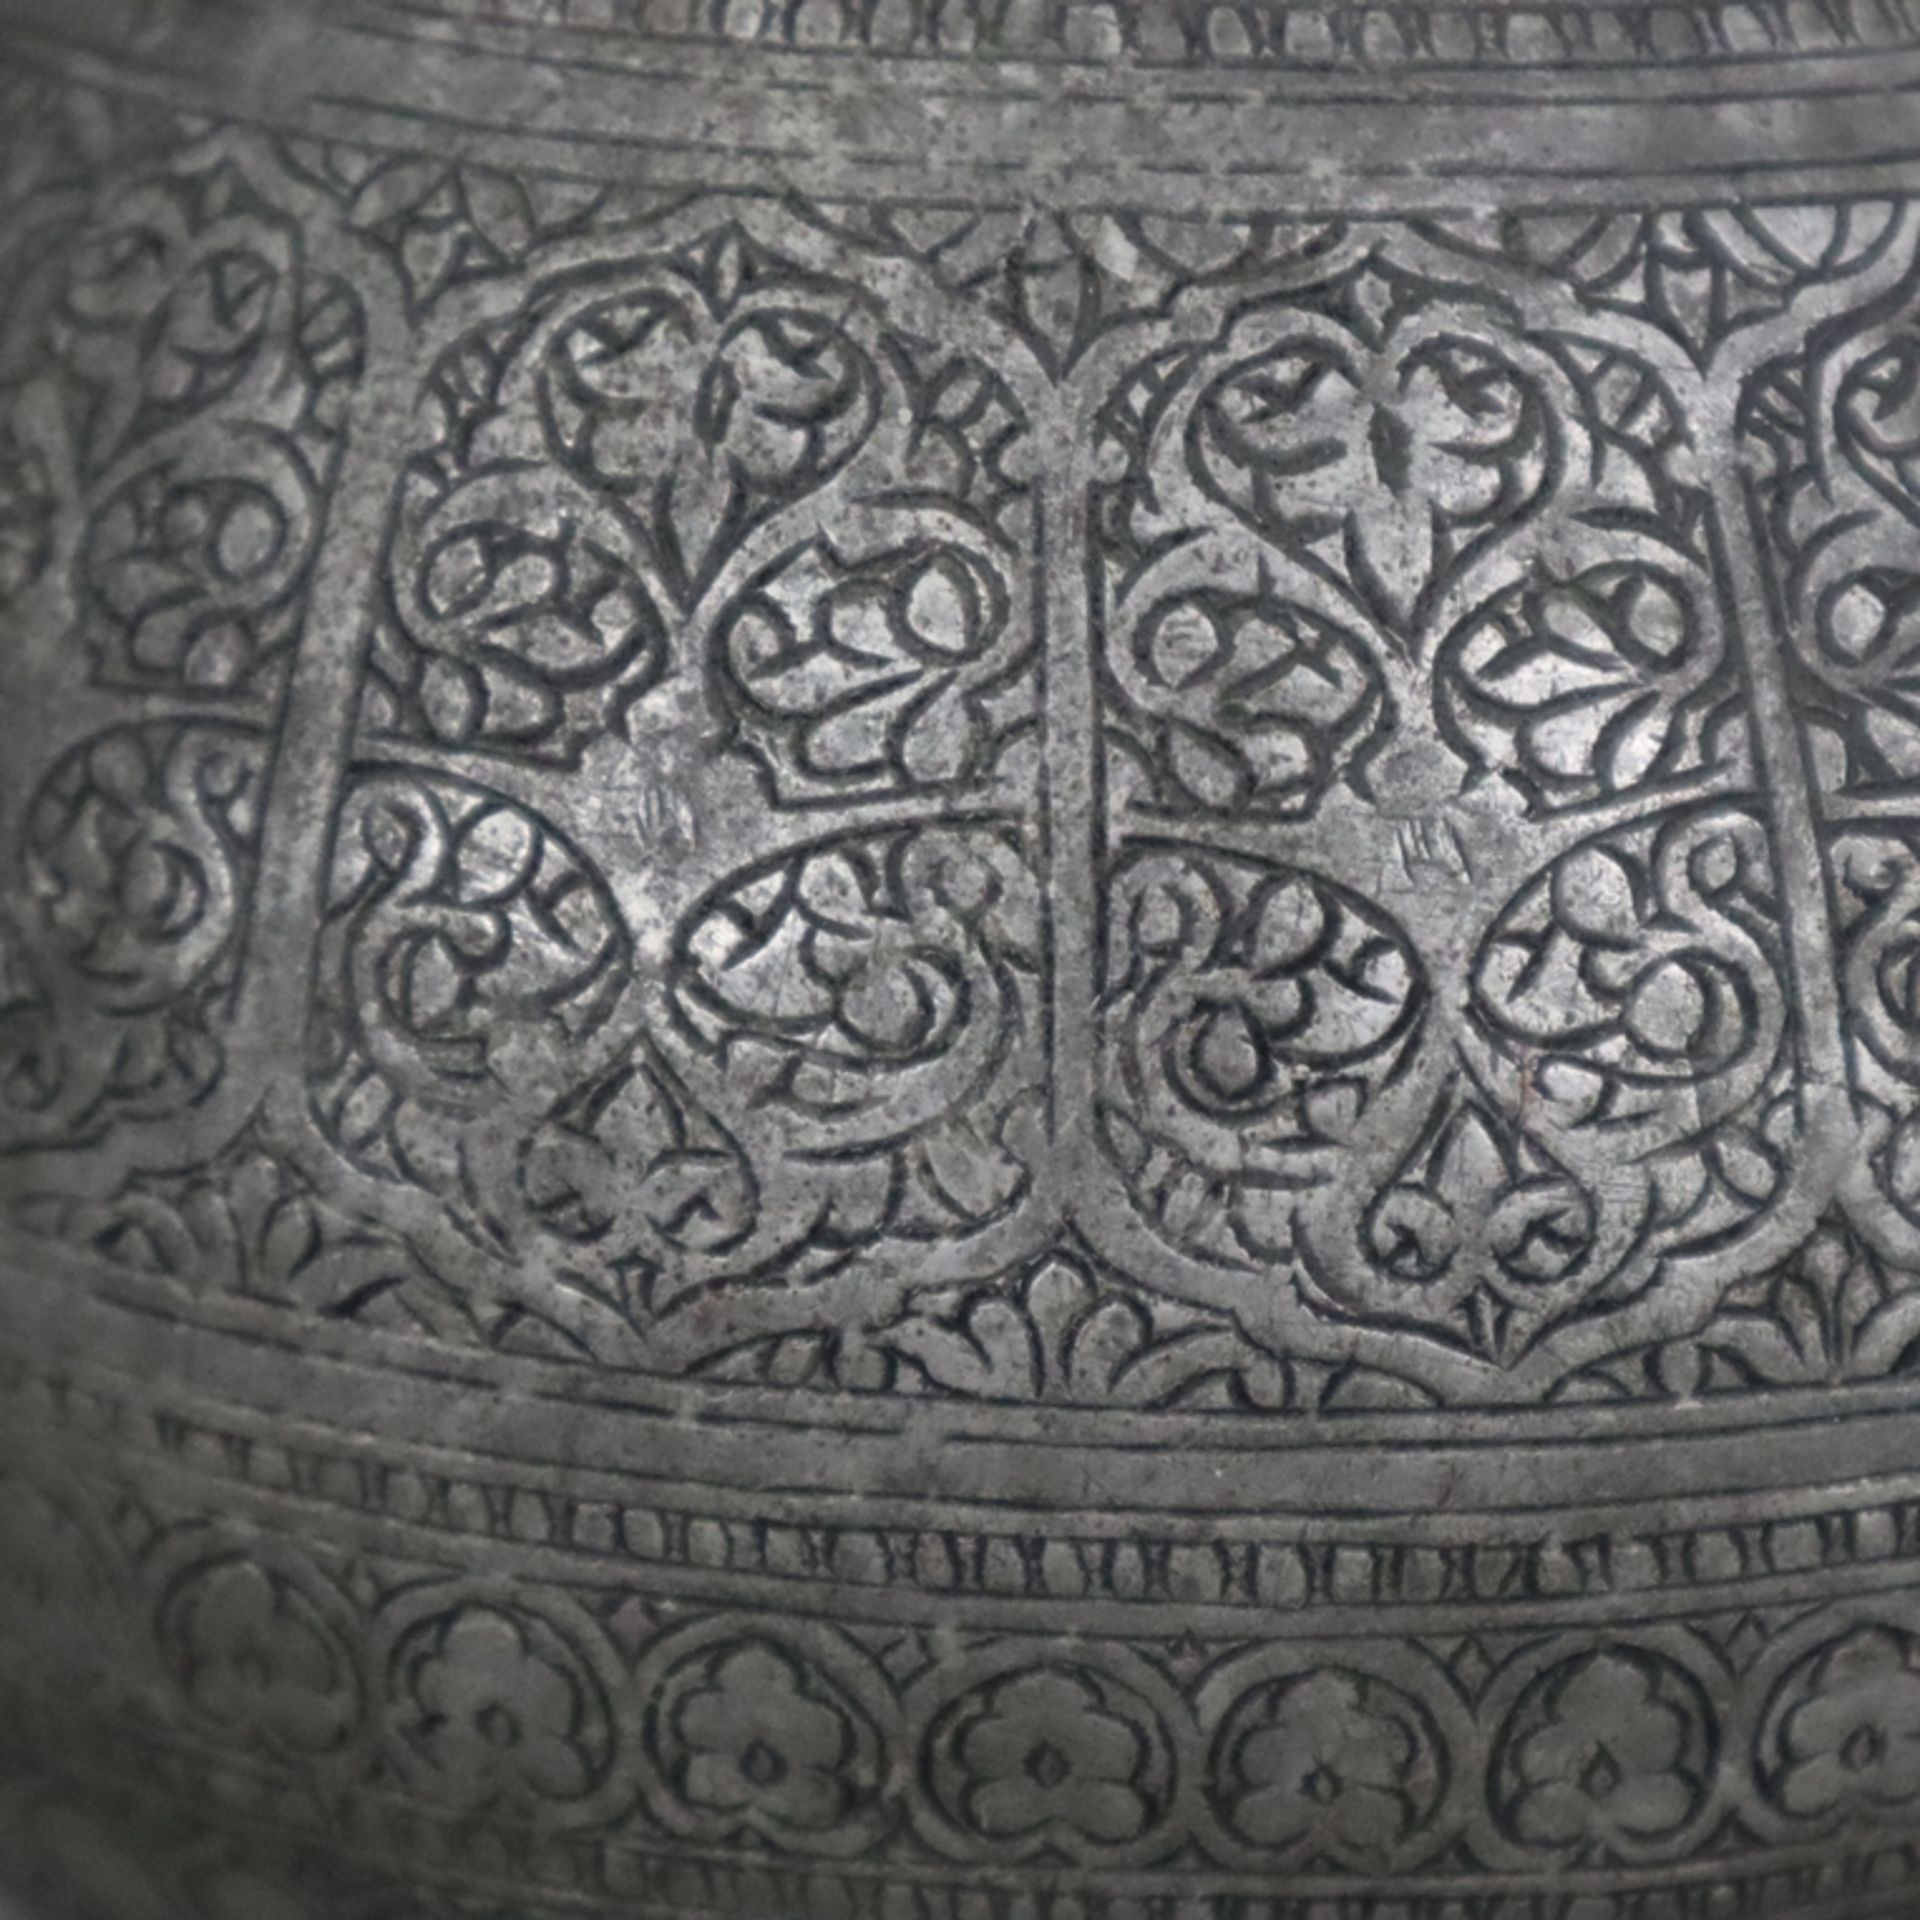 Vase - indopersisch, Kupfer versilbert / verzinnt?, birnförmige Vasenform am Hals durch Ringe gegli - Bild 6 aus 9